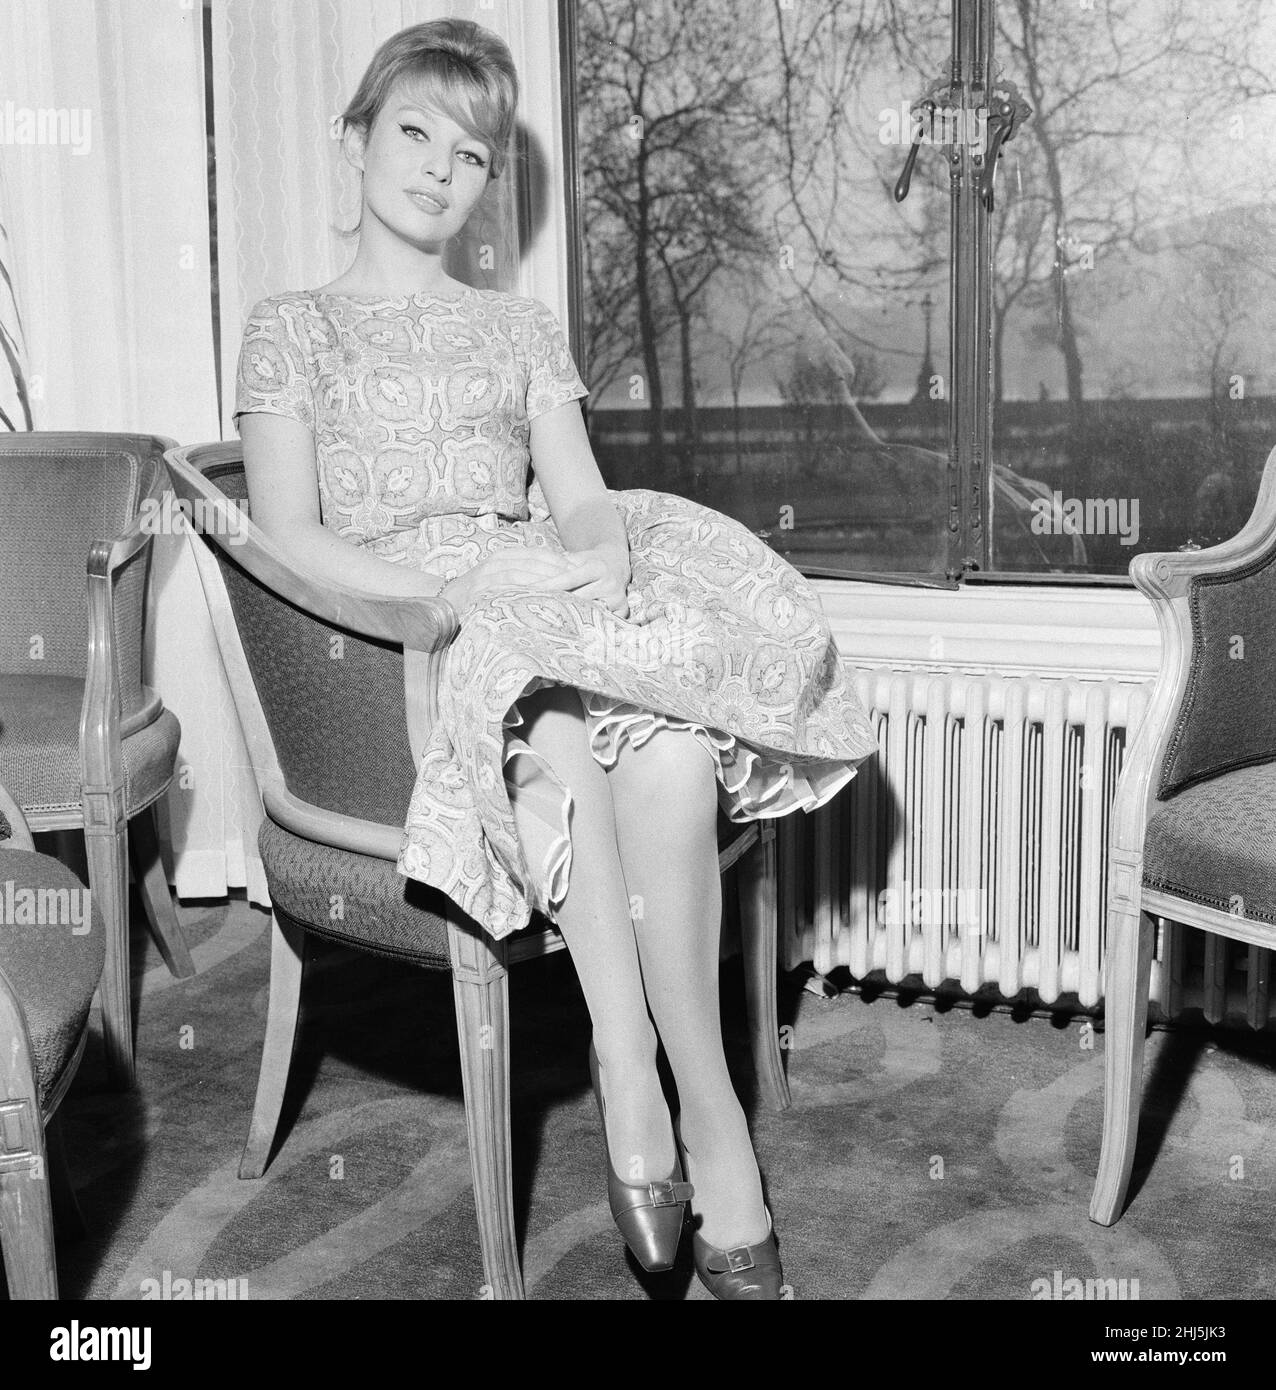 Annette Stroyberg, attrice danese, a Londra, domenica 14th dicembre 1958. Annette è nel Regno Unito per un test su schermo, lei spera di un ruolo nel nuovo film The Guns of Navarone. Foto Stock